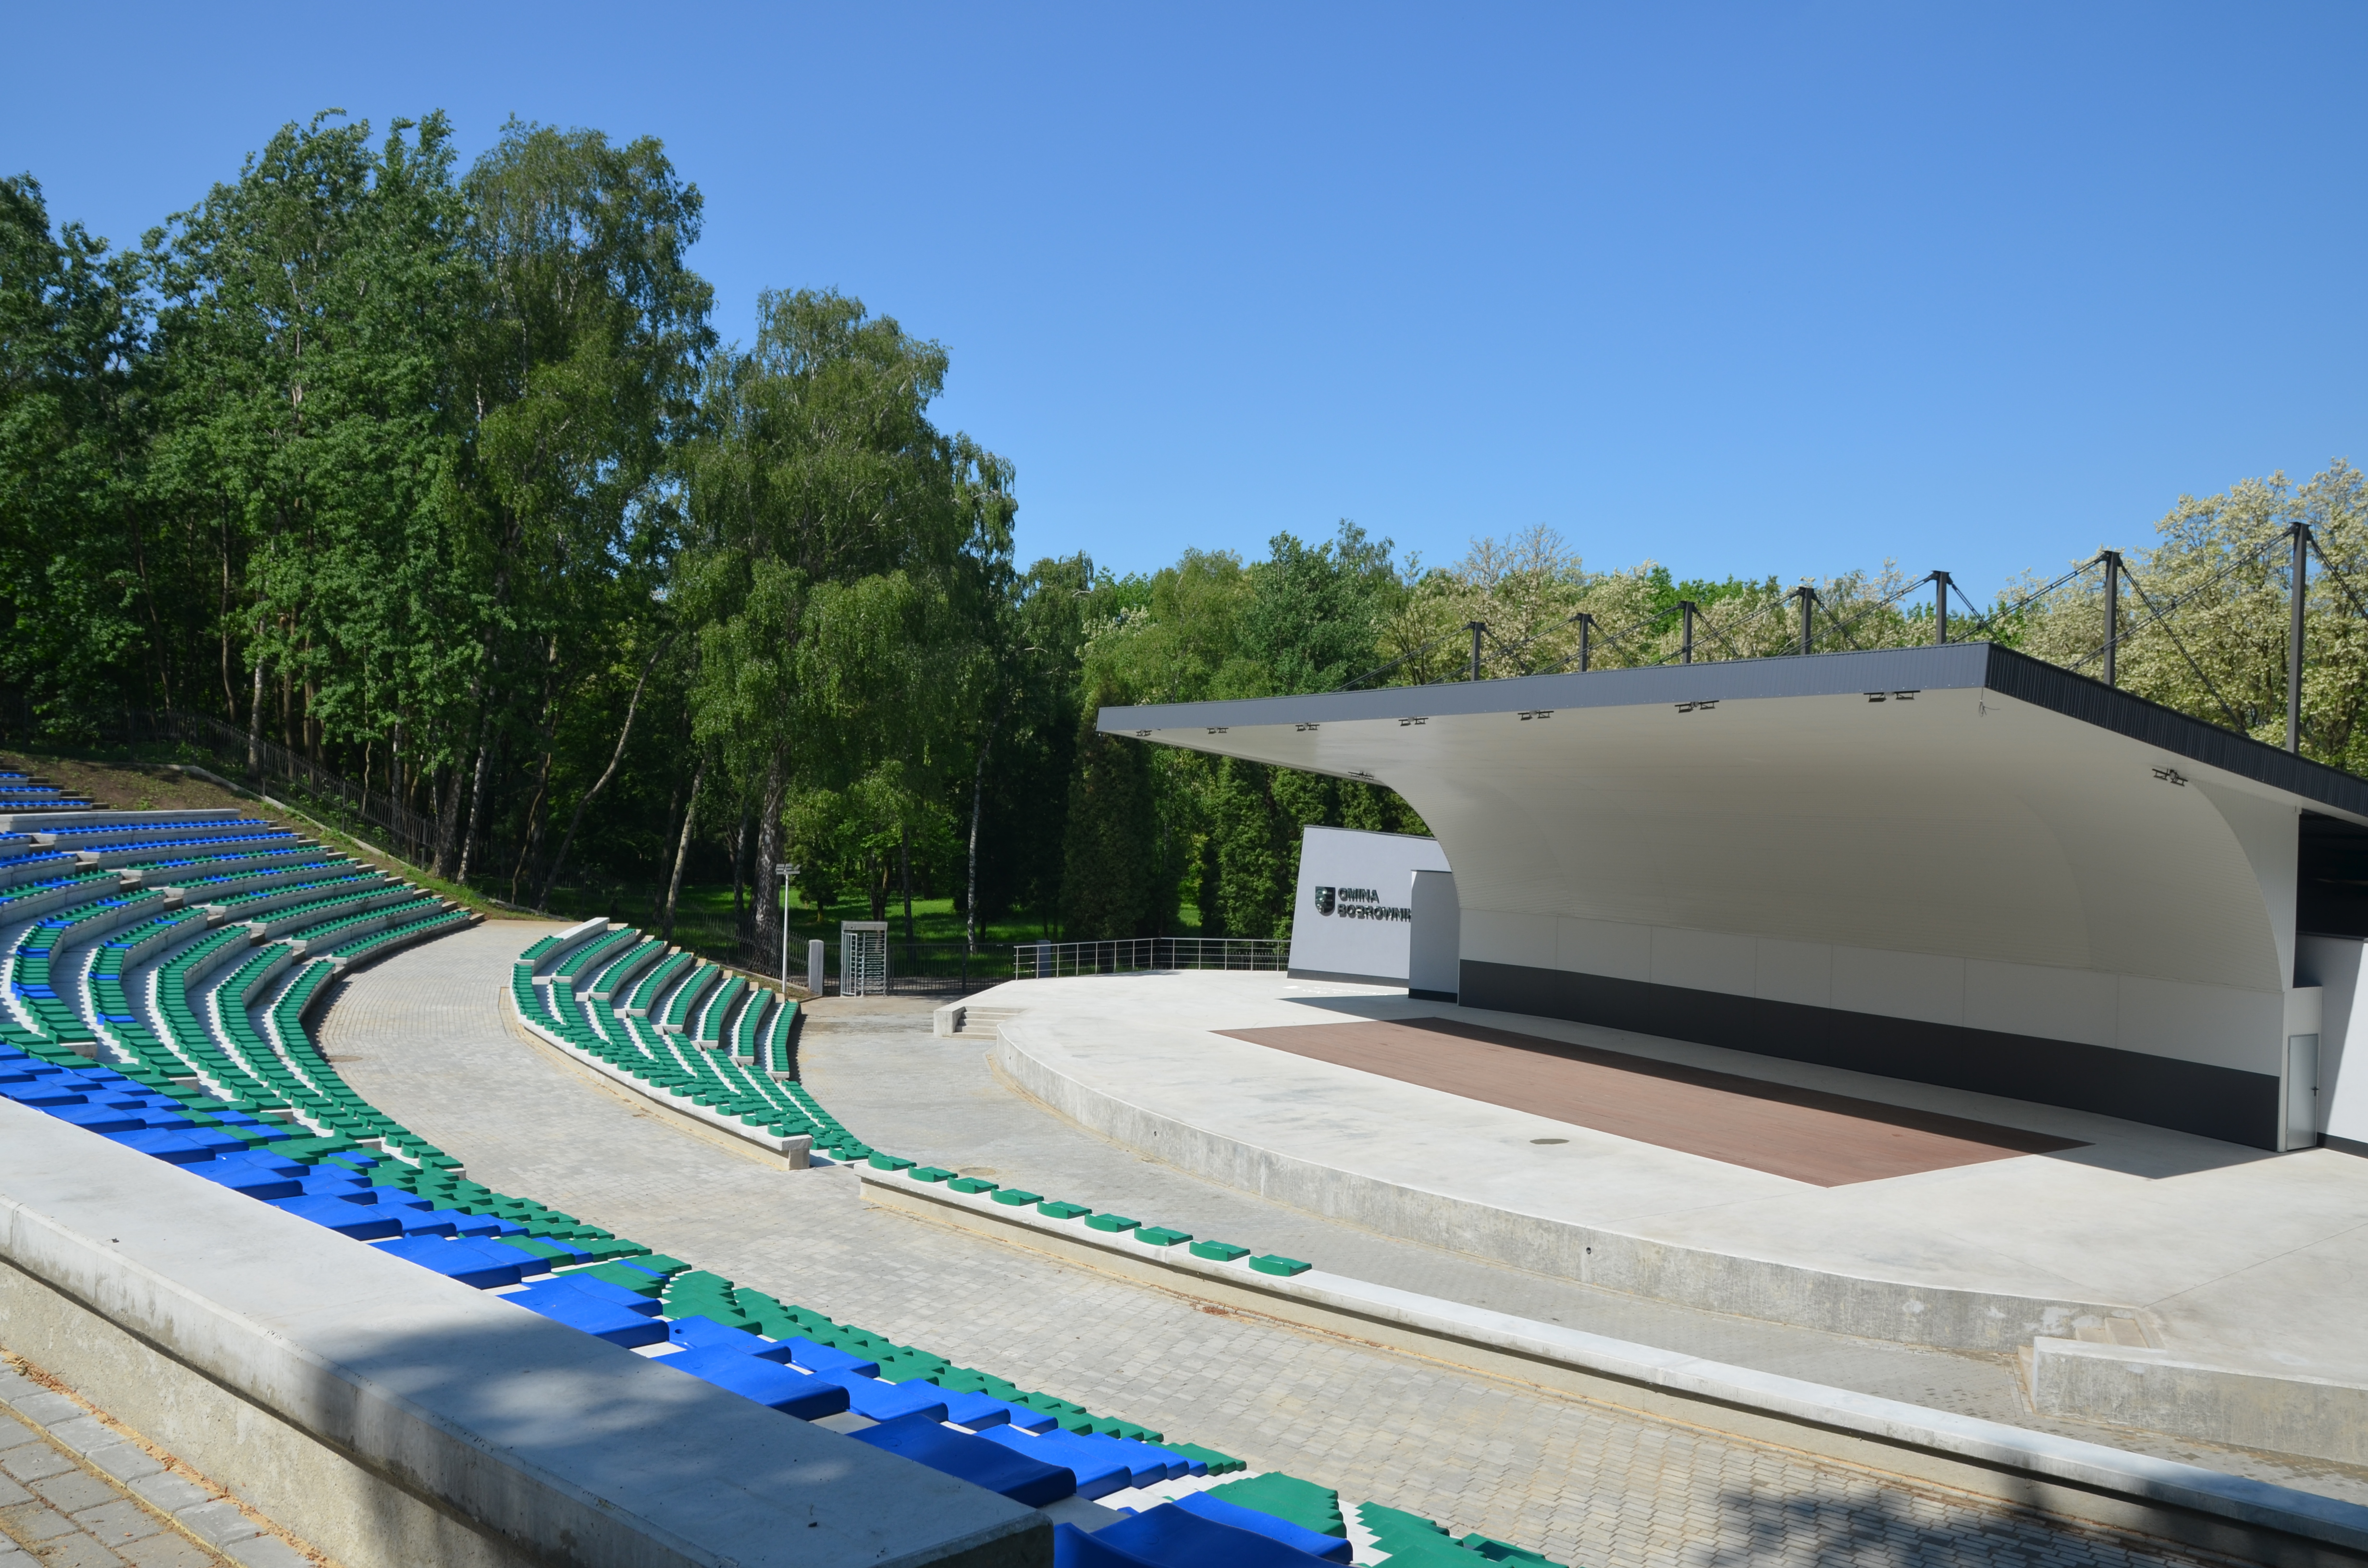 Amfiteatr z trybunami w kolorach zielonym i niebieskim oraz z zadaszoną sceną